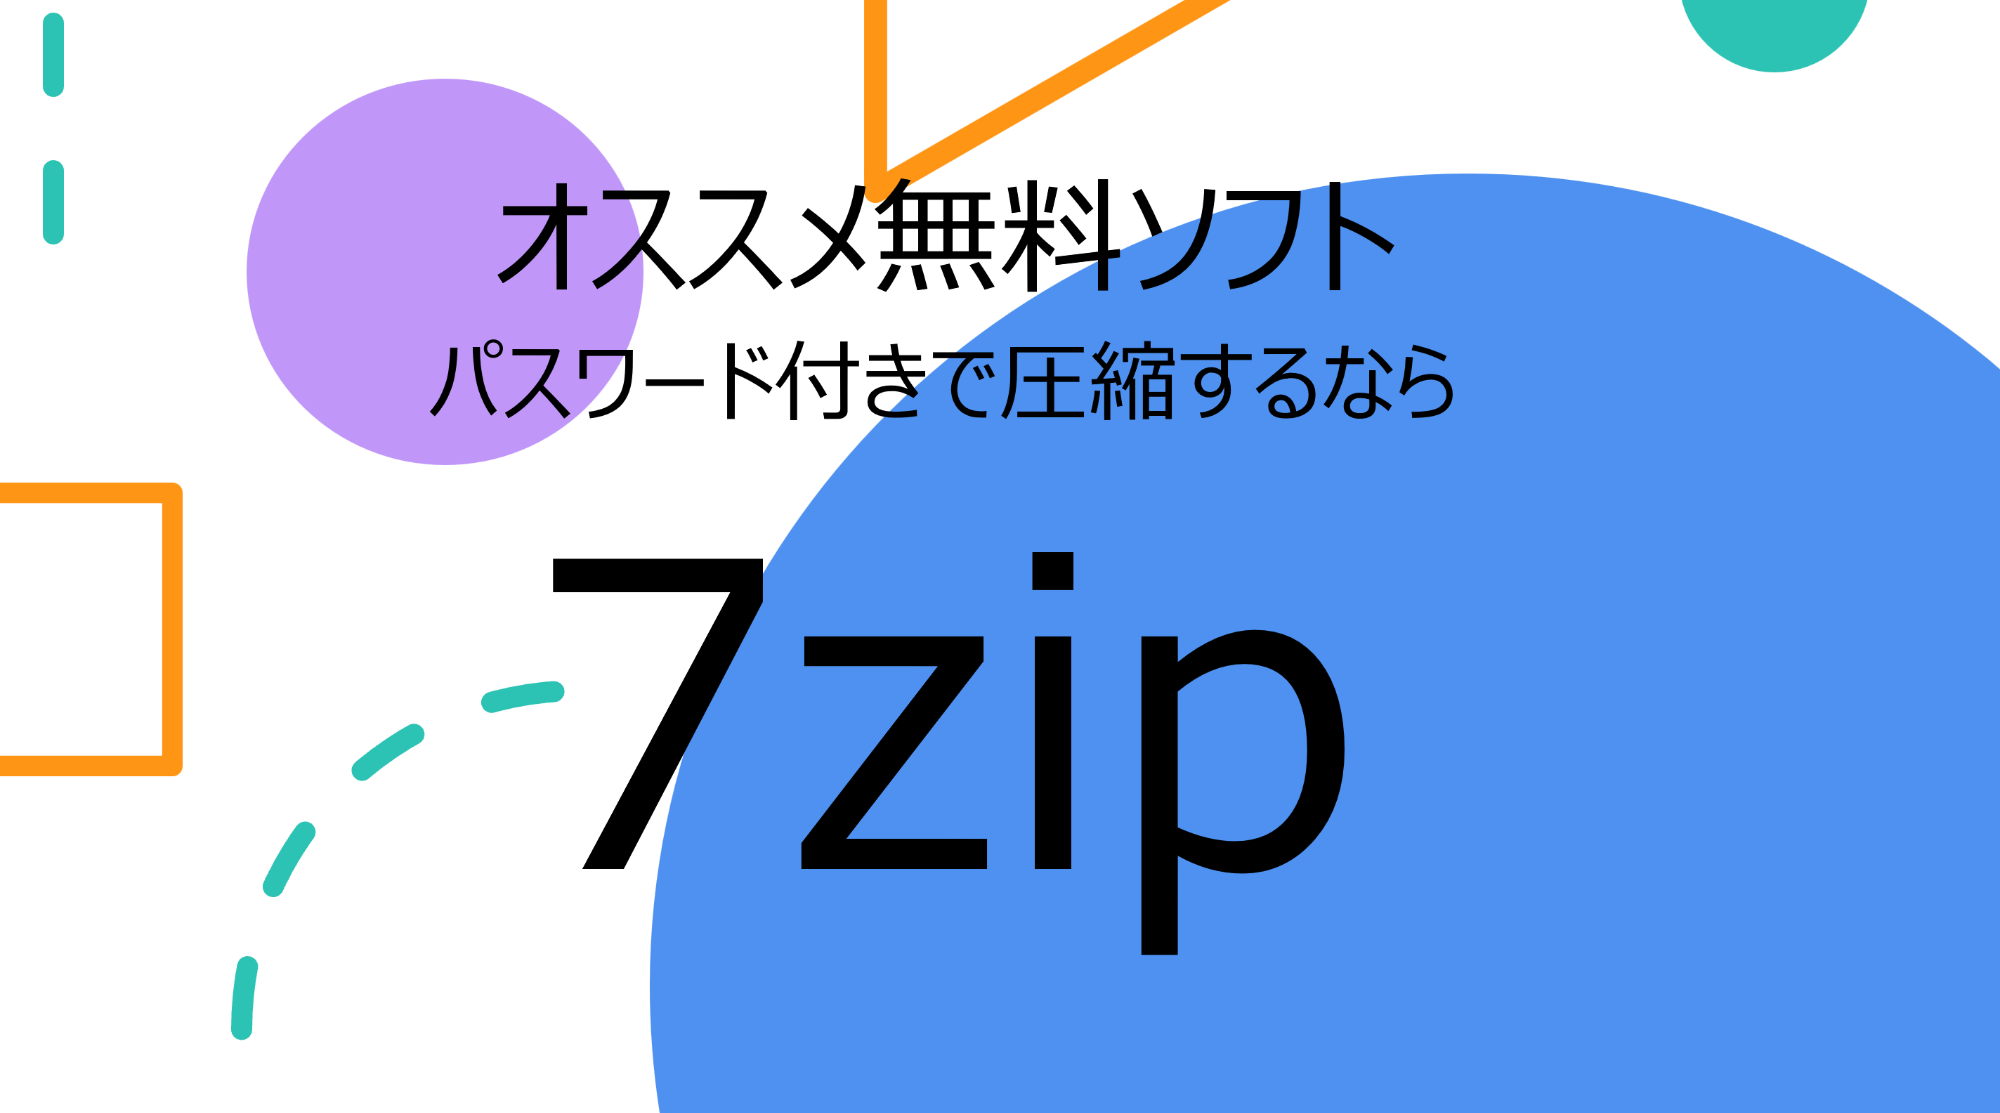 無料ソフト「7zip」パスワード付き圧縮ソフトのインストール方法と使用方法の説明